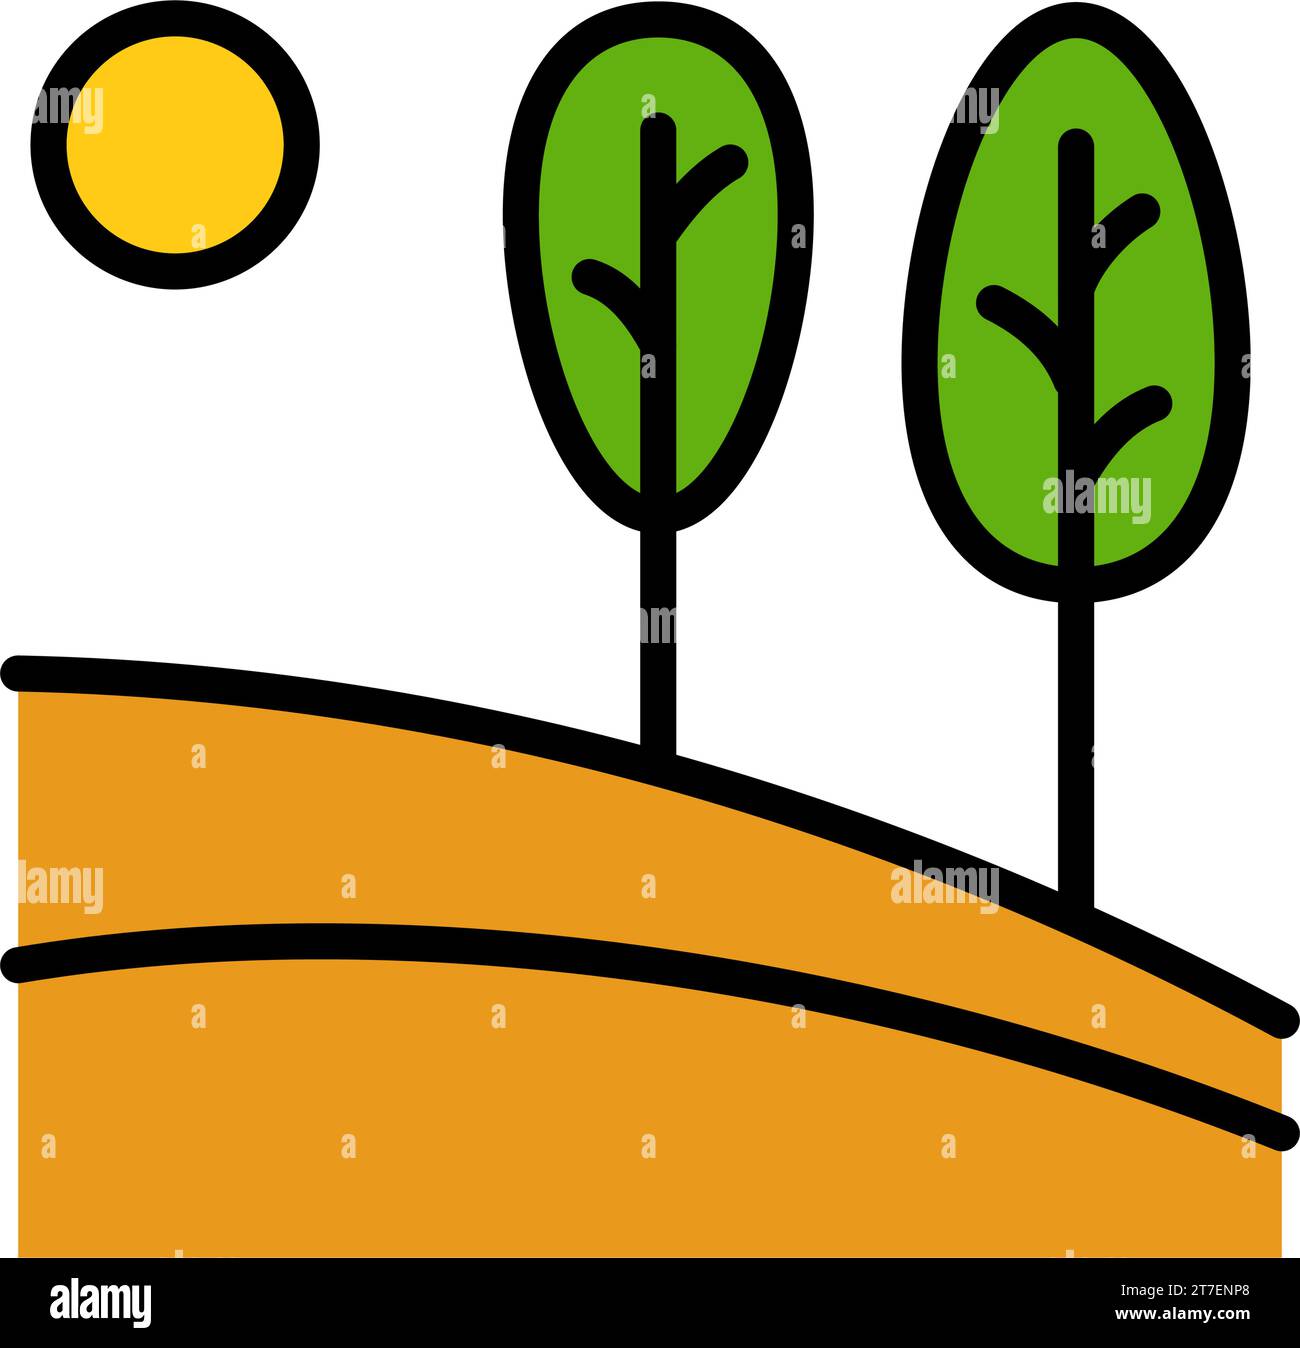 Logo vettoriale della natura in stile colore. Icona piatta di un paesaggio semplice con alberi, sole, campi. Emblema aziendale, distintivo per viaggi, agricoltura ed ecologia Illustrazione Vettoriale